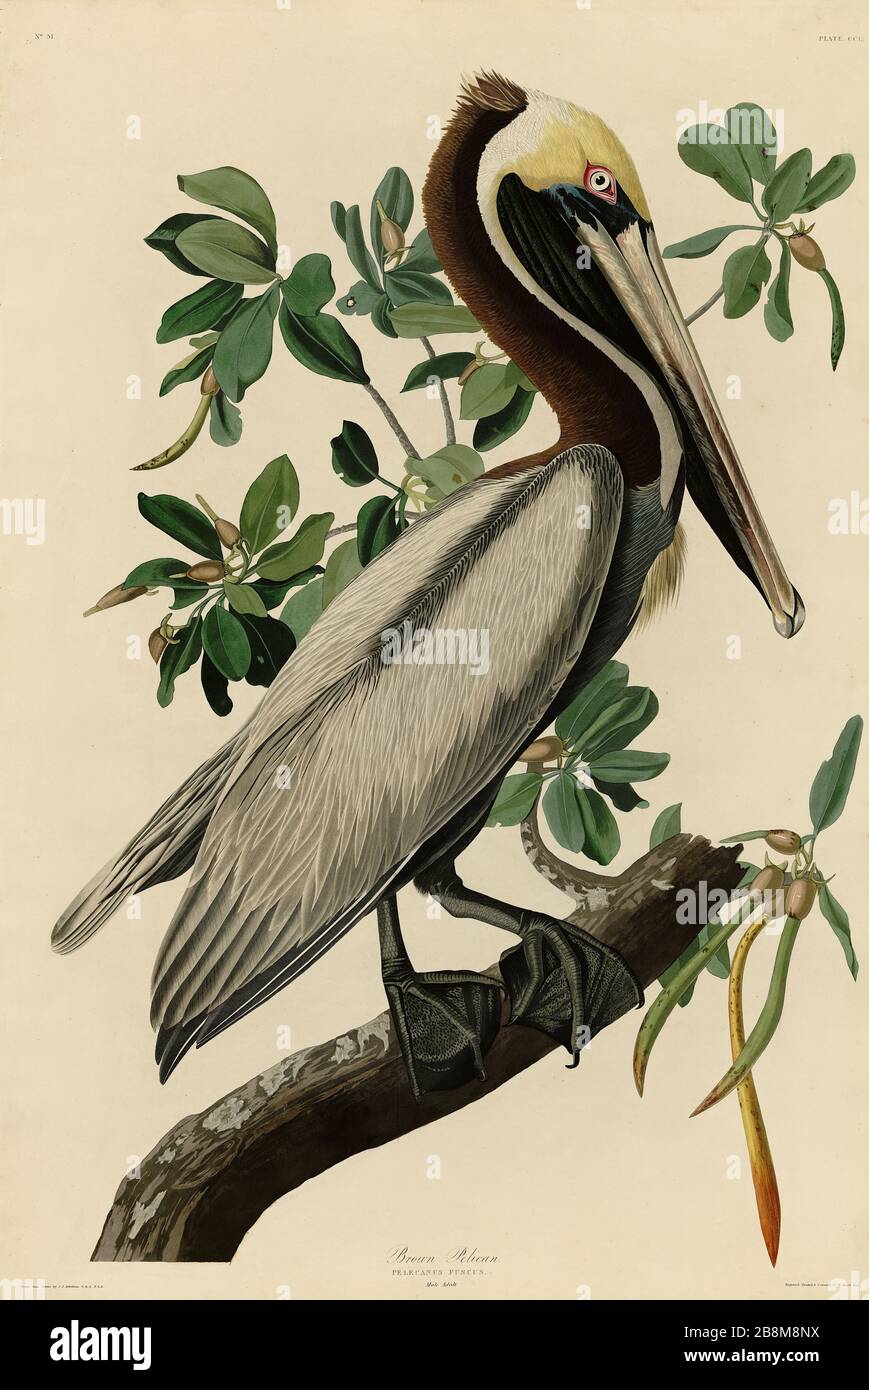 Platte 251 Brown Pelican, von The Birds of America Folio (187-184) von John James Audubon - sehr hohe Auflösung und Qualität bearbeitetes Bild Stockfoto